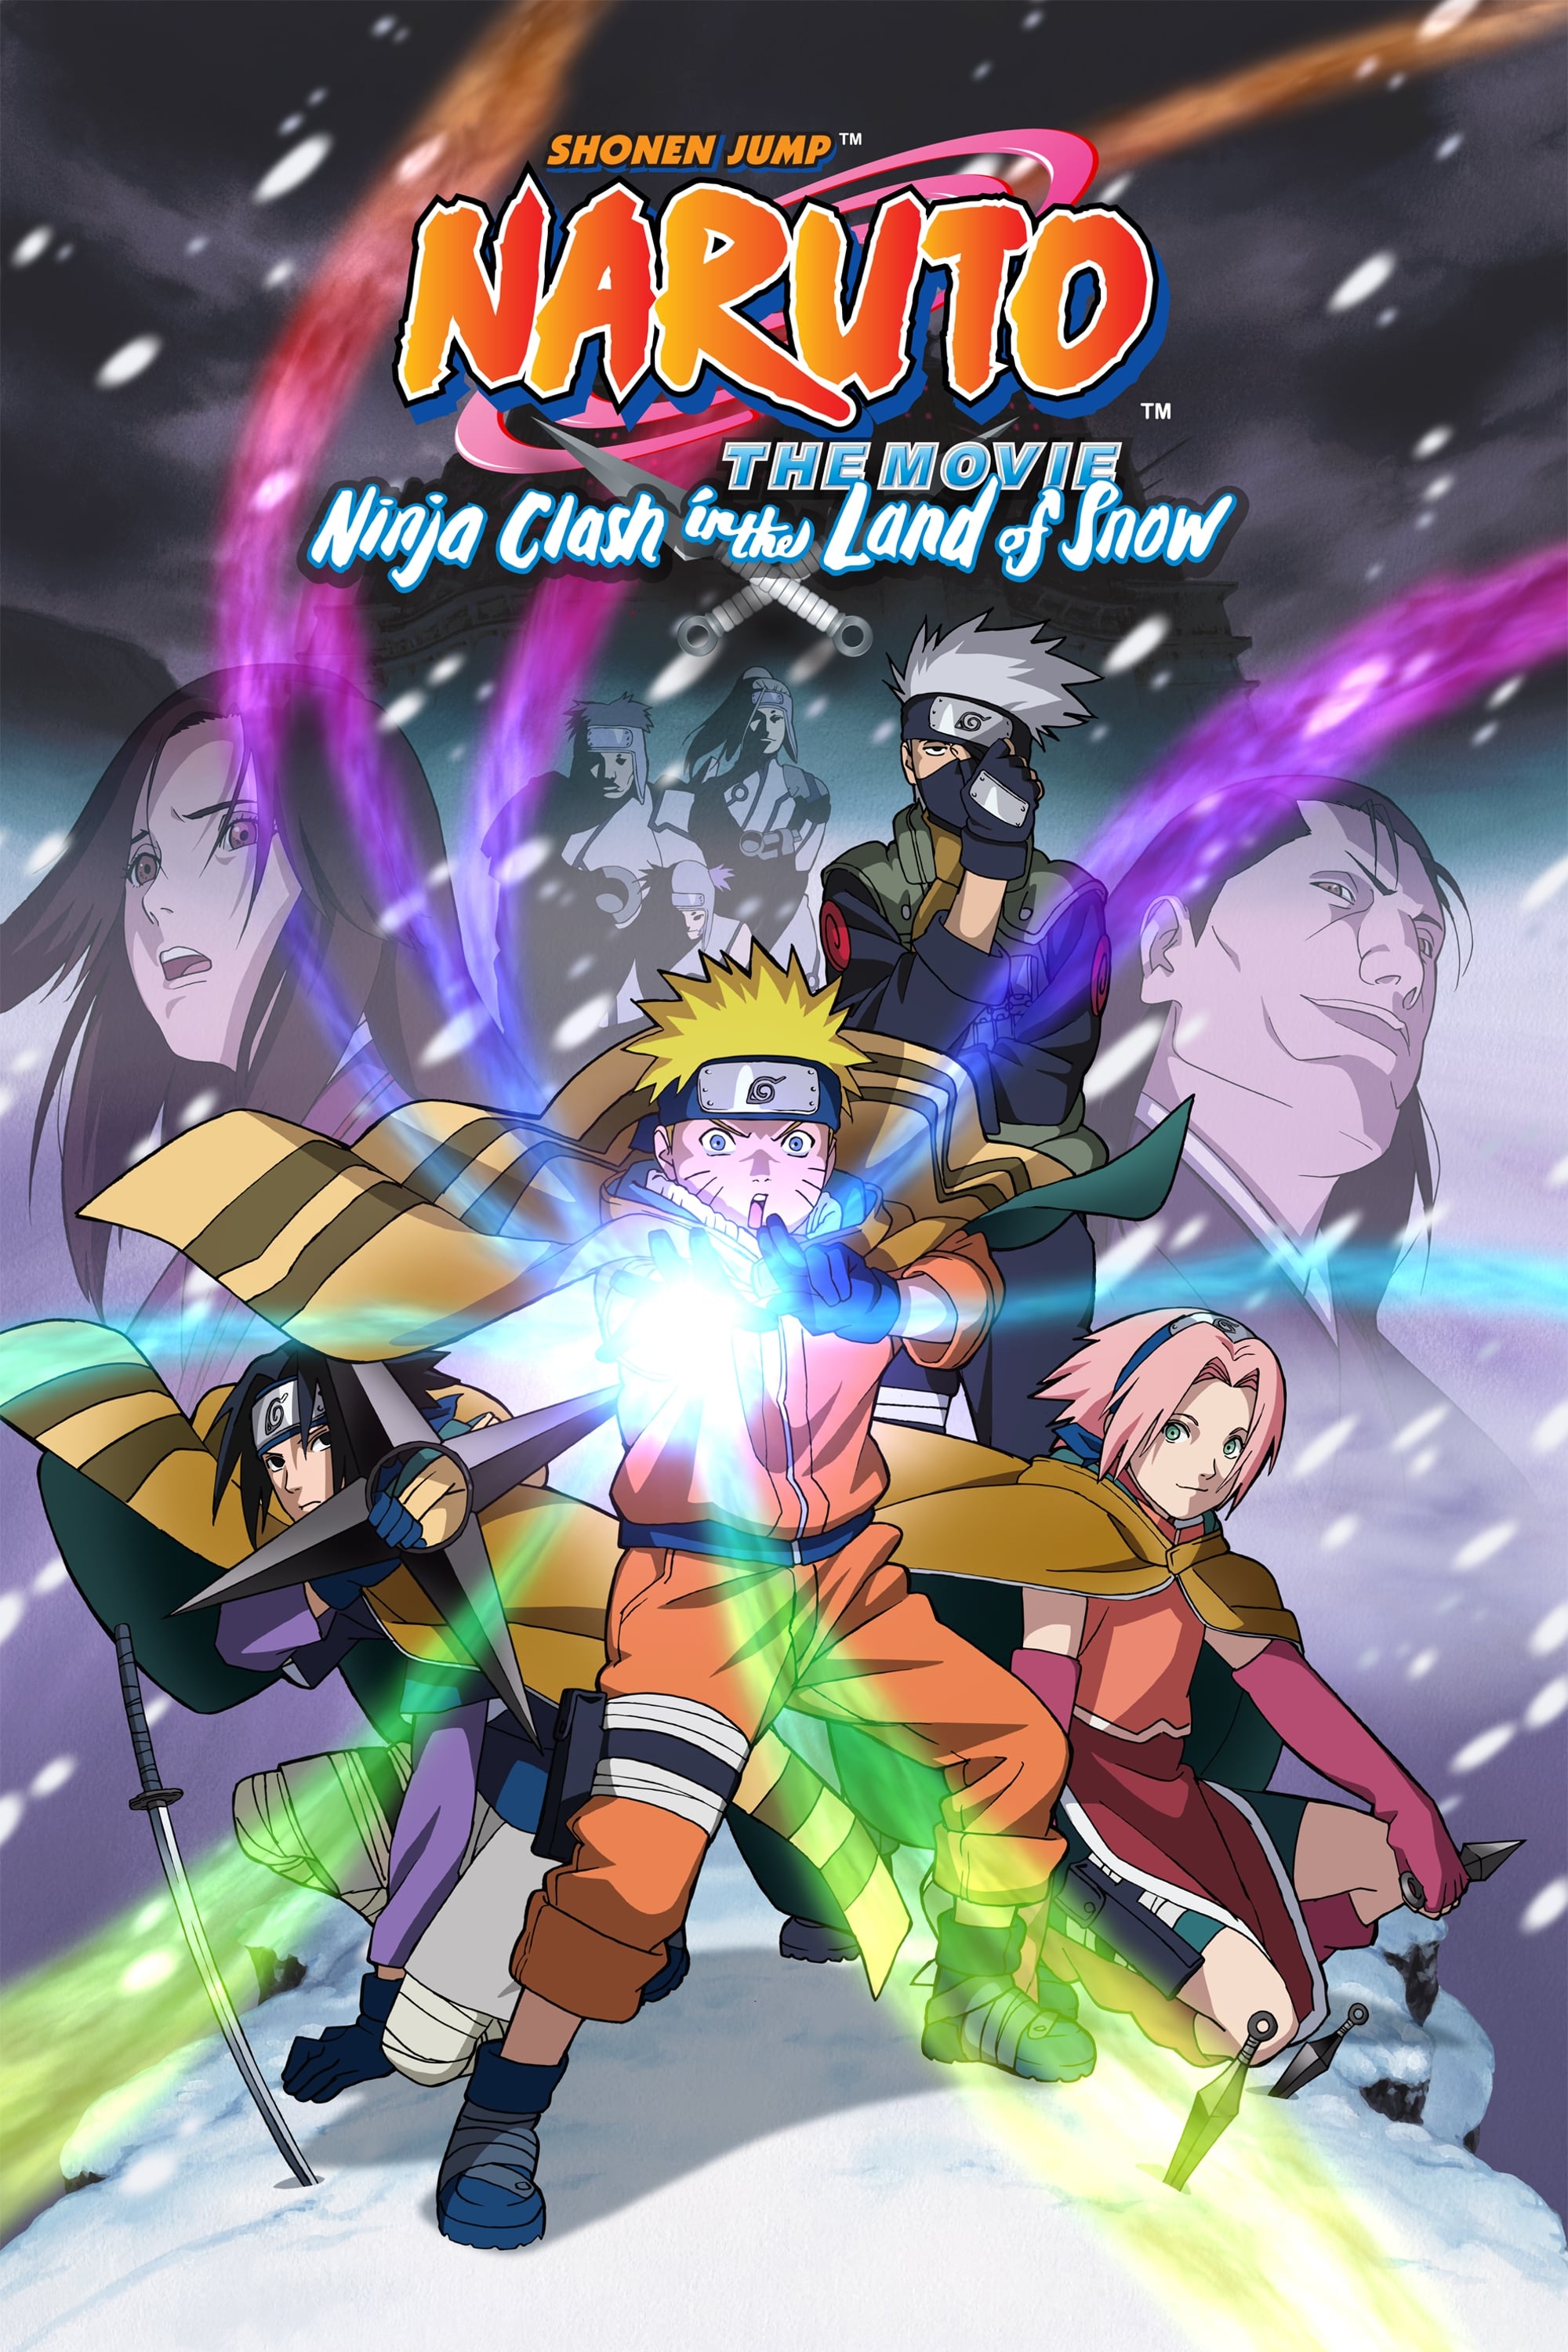 Naruto 1: ¡La Gran misión! ¡El rescate de la Princesa de la Nieve! (2004)